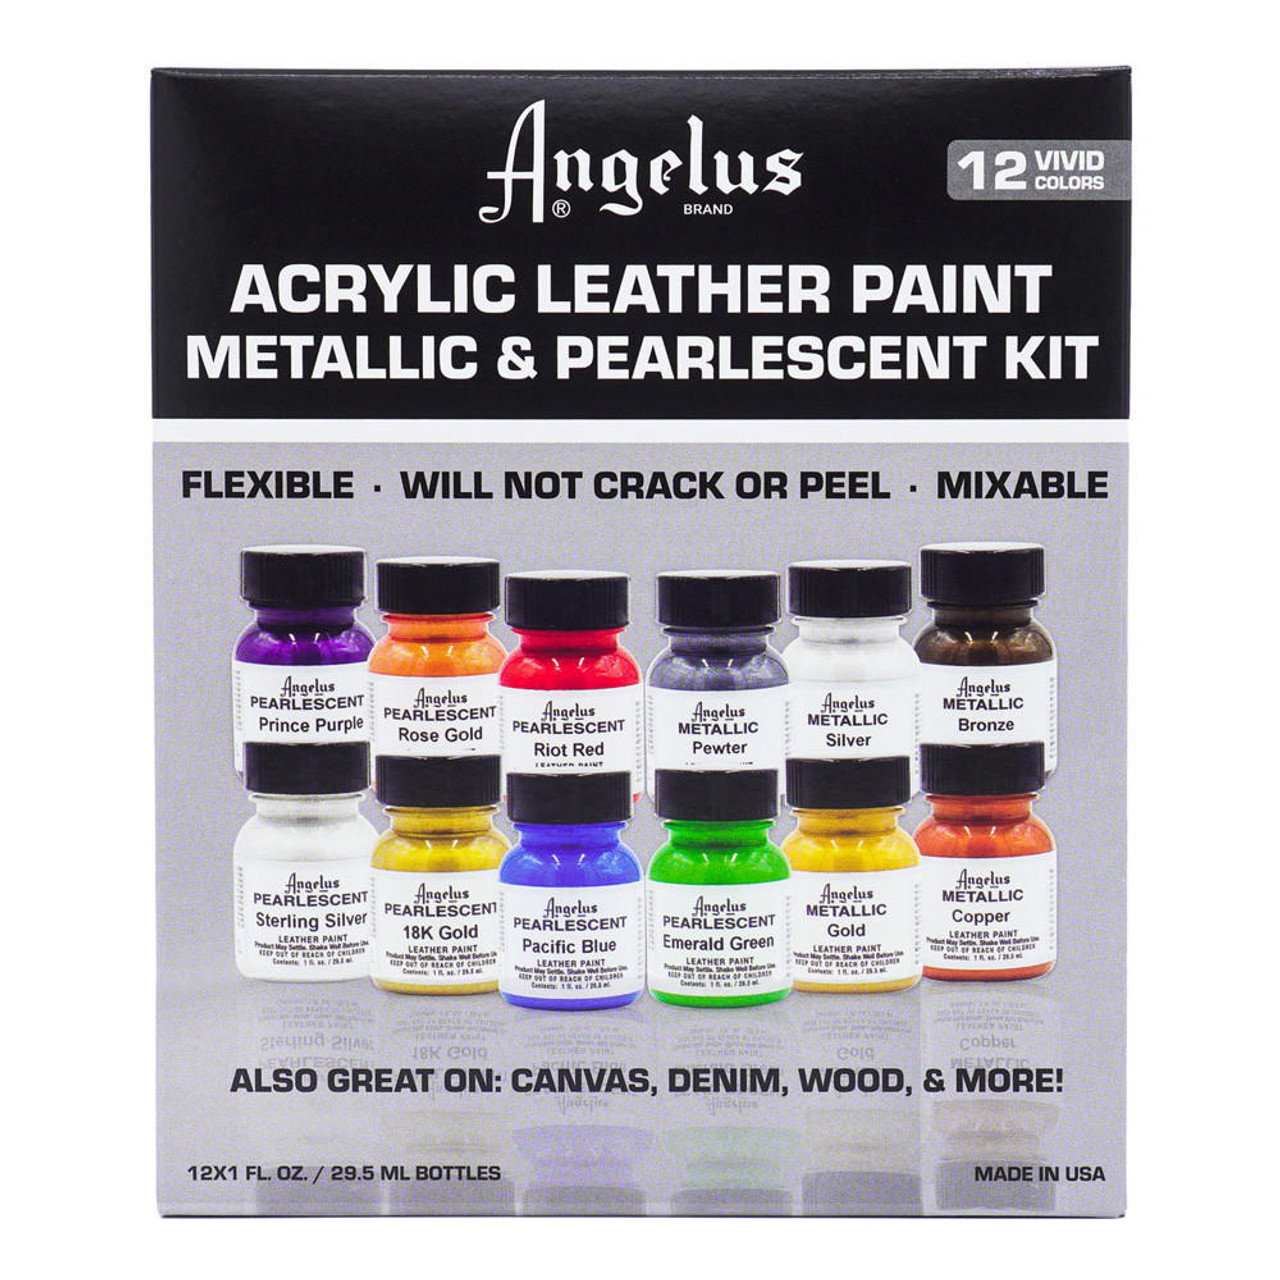 Angelus Metallic & Pearlescent Acrylic Leather Paint 1oz Kit - Sam Flax  Atlanta